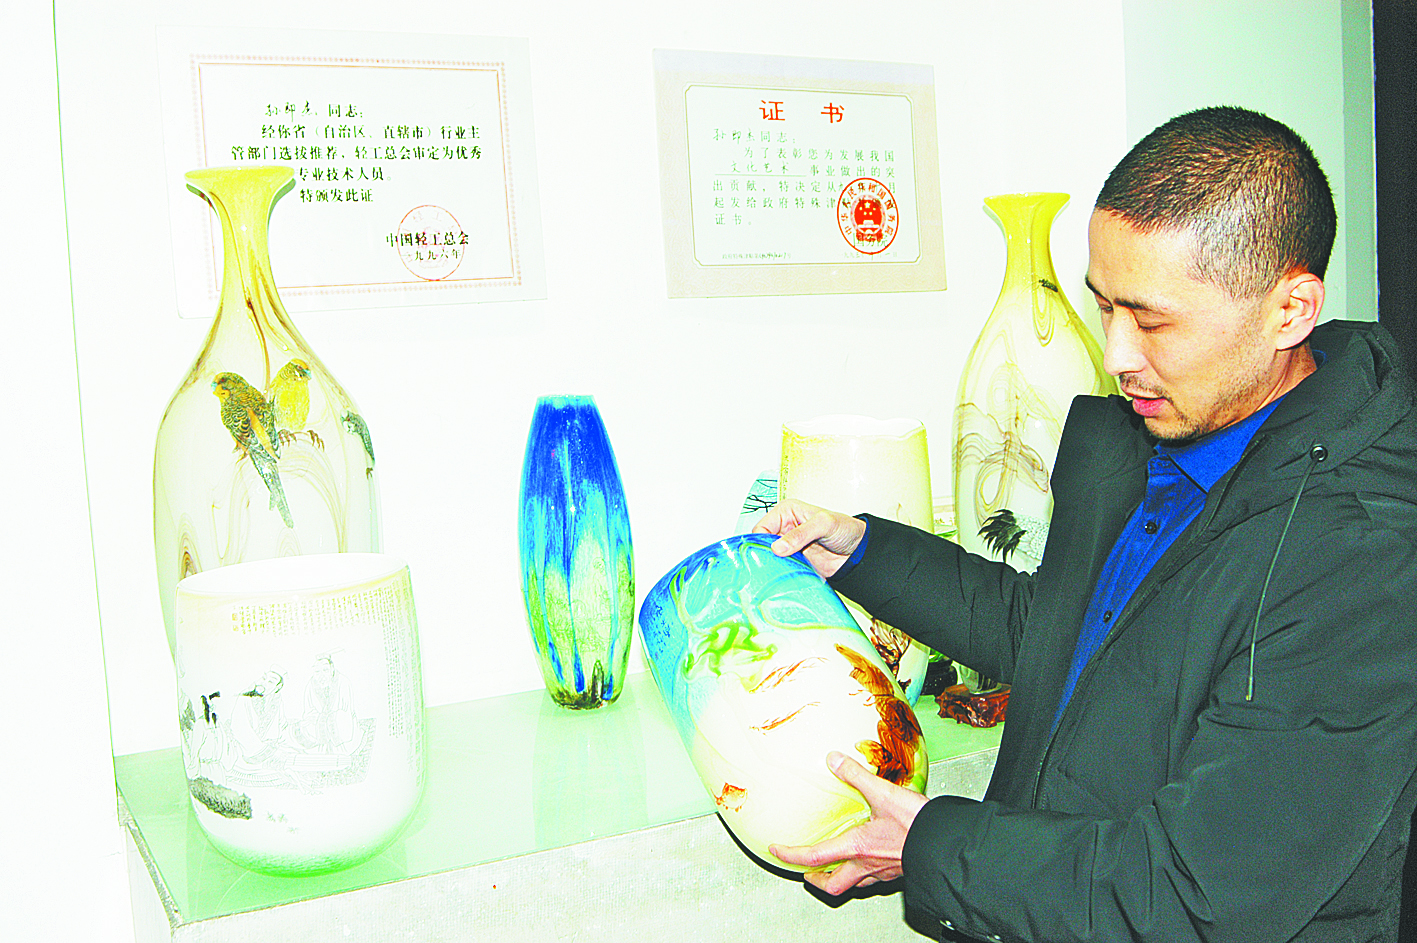 一家五代传技艺 淄博琉璃壁画嵌入北京地铁